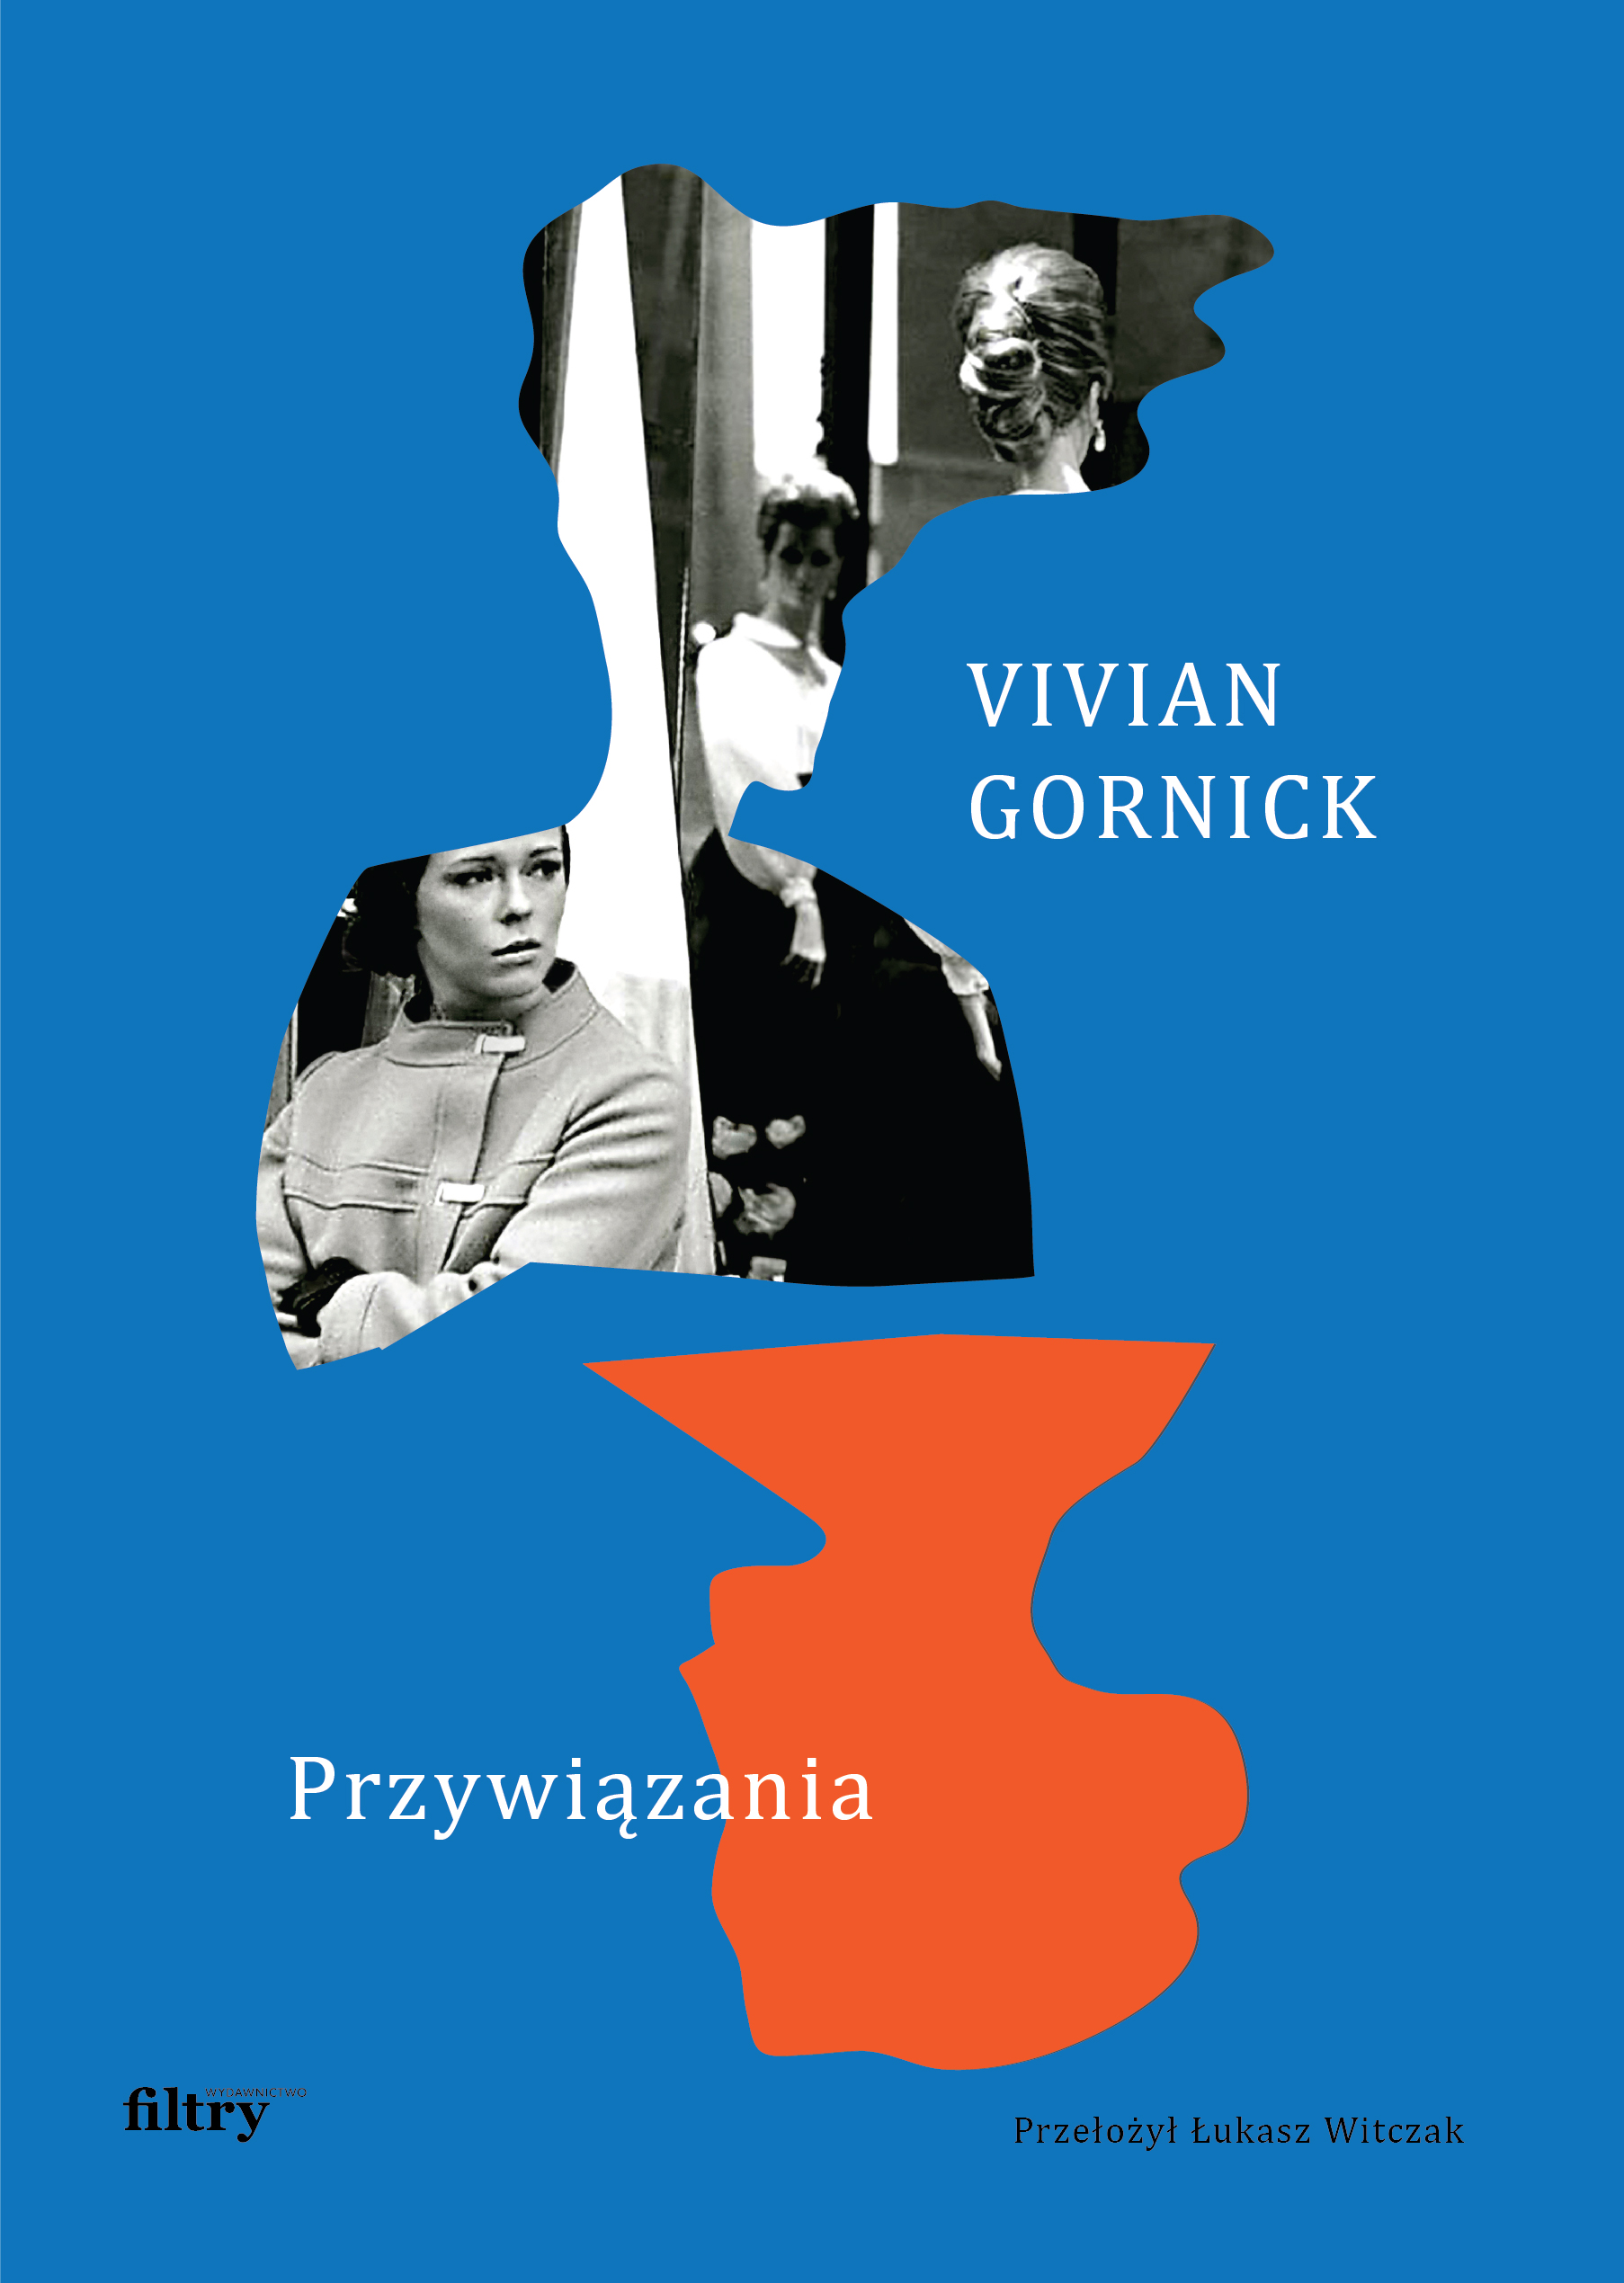 Vivian Gornick – Przywiazania